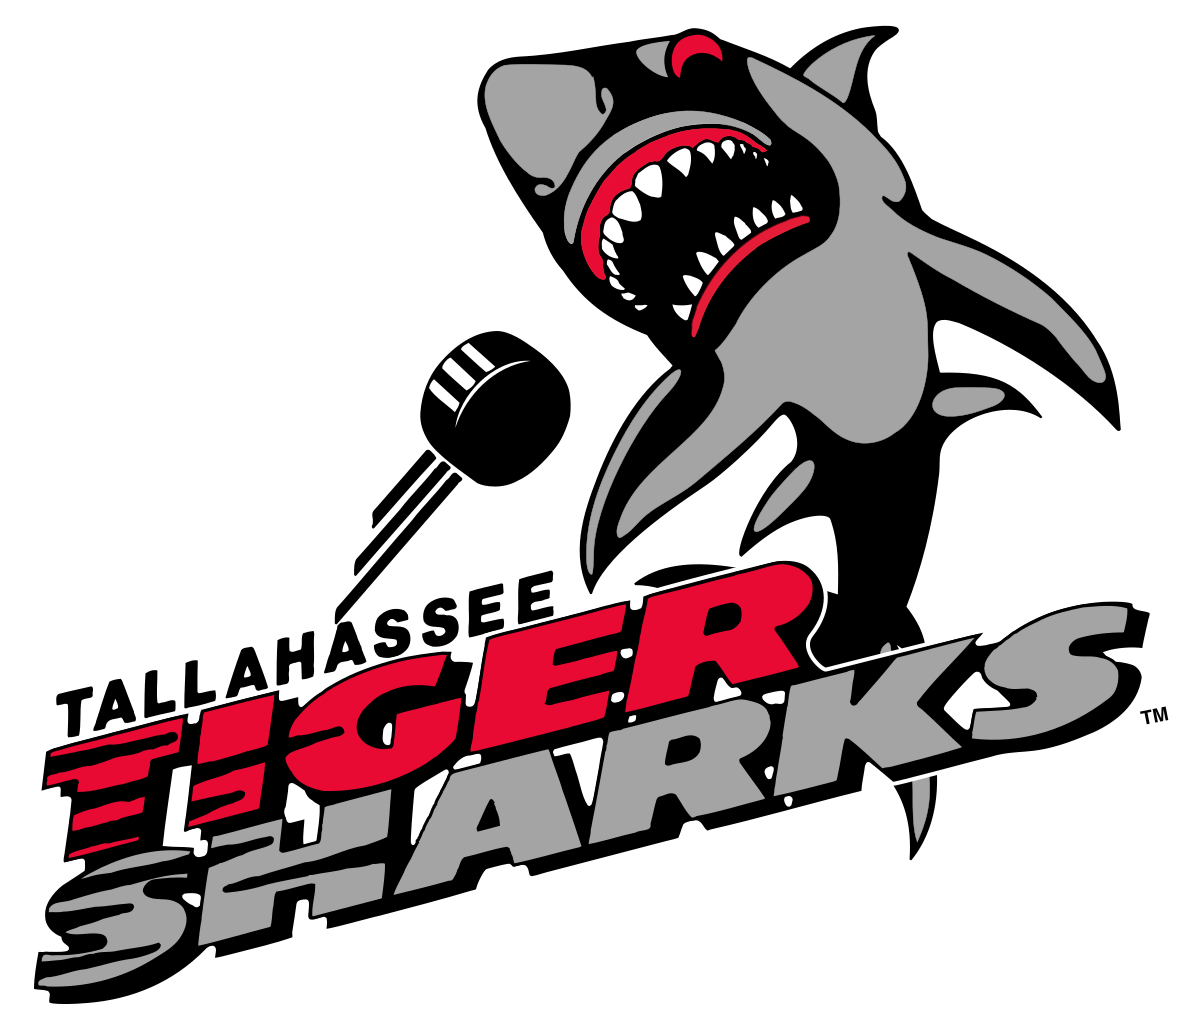 Tiger Shark Logo - Tallahassee Tiger Sharks